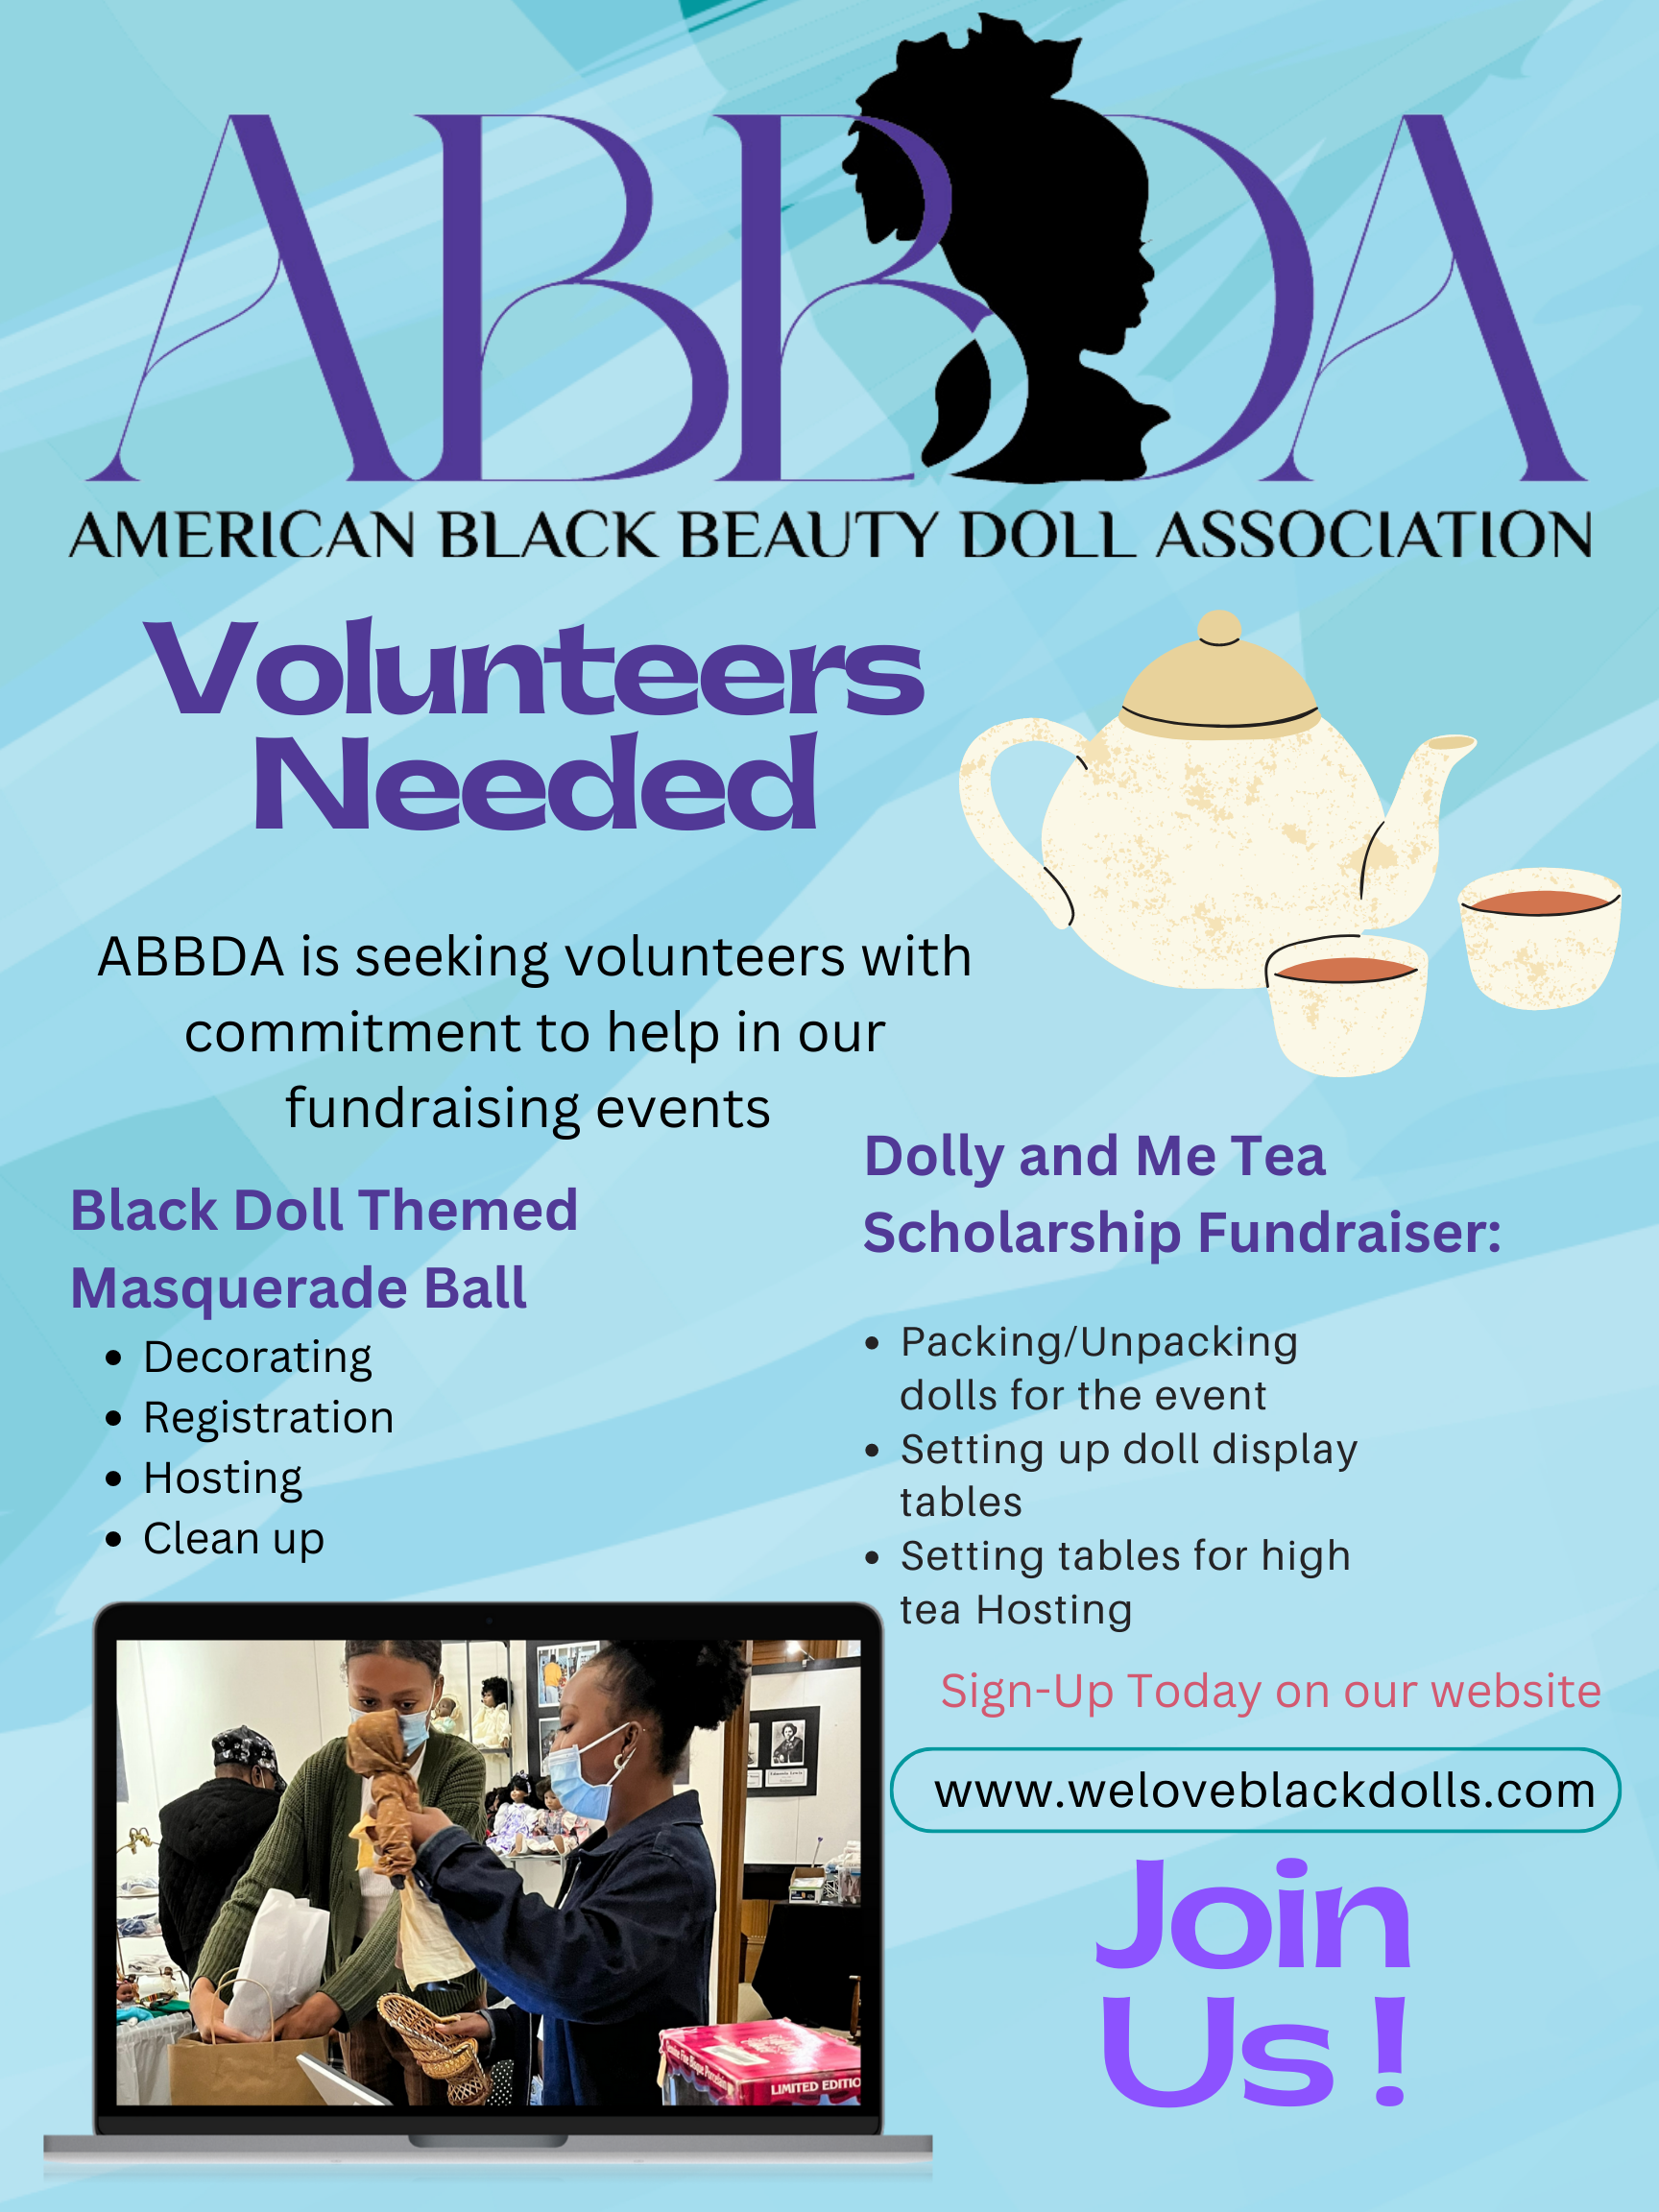 ABBDA Volunteers Needed